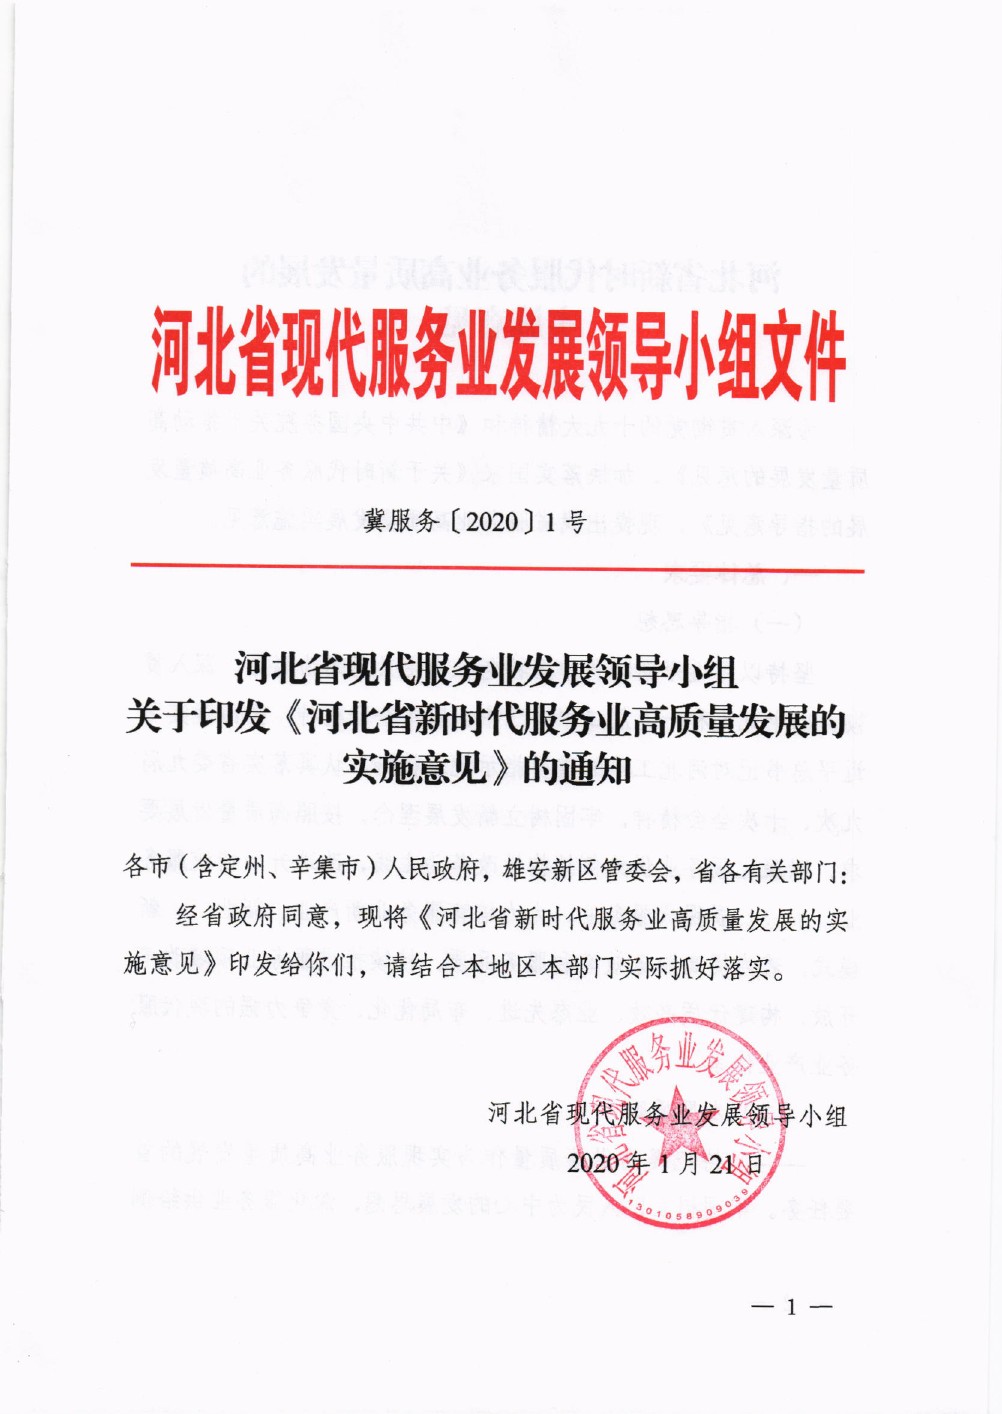 河北省新时代服务业高质量发展的实施意见